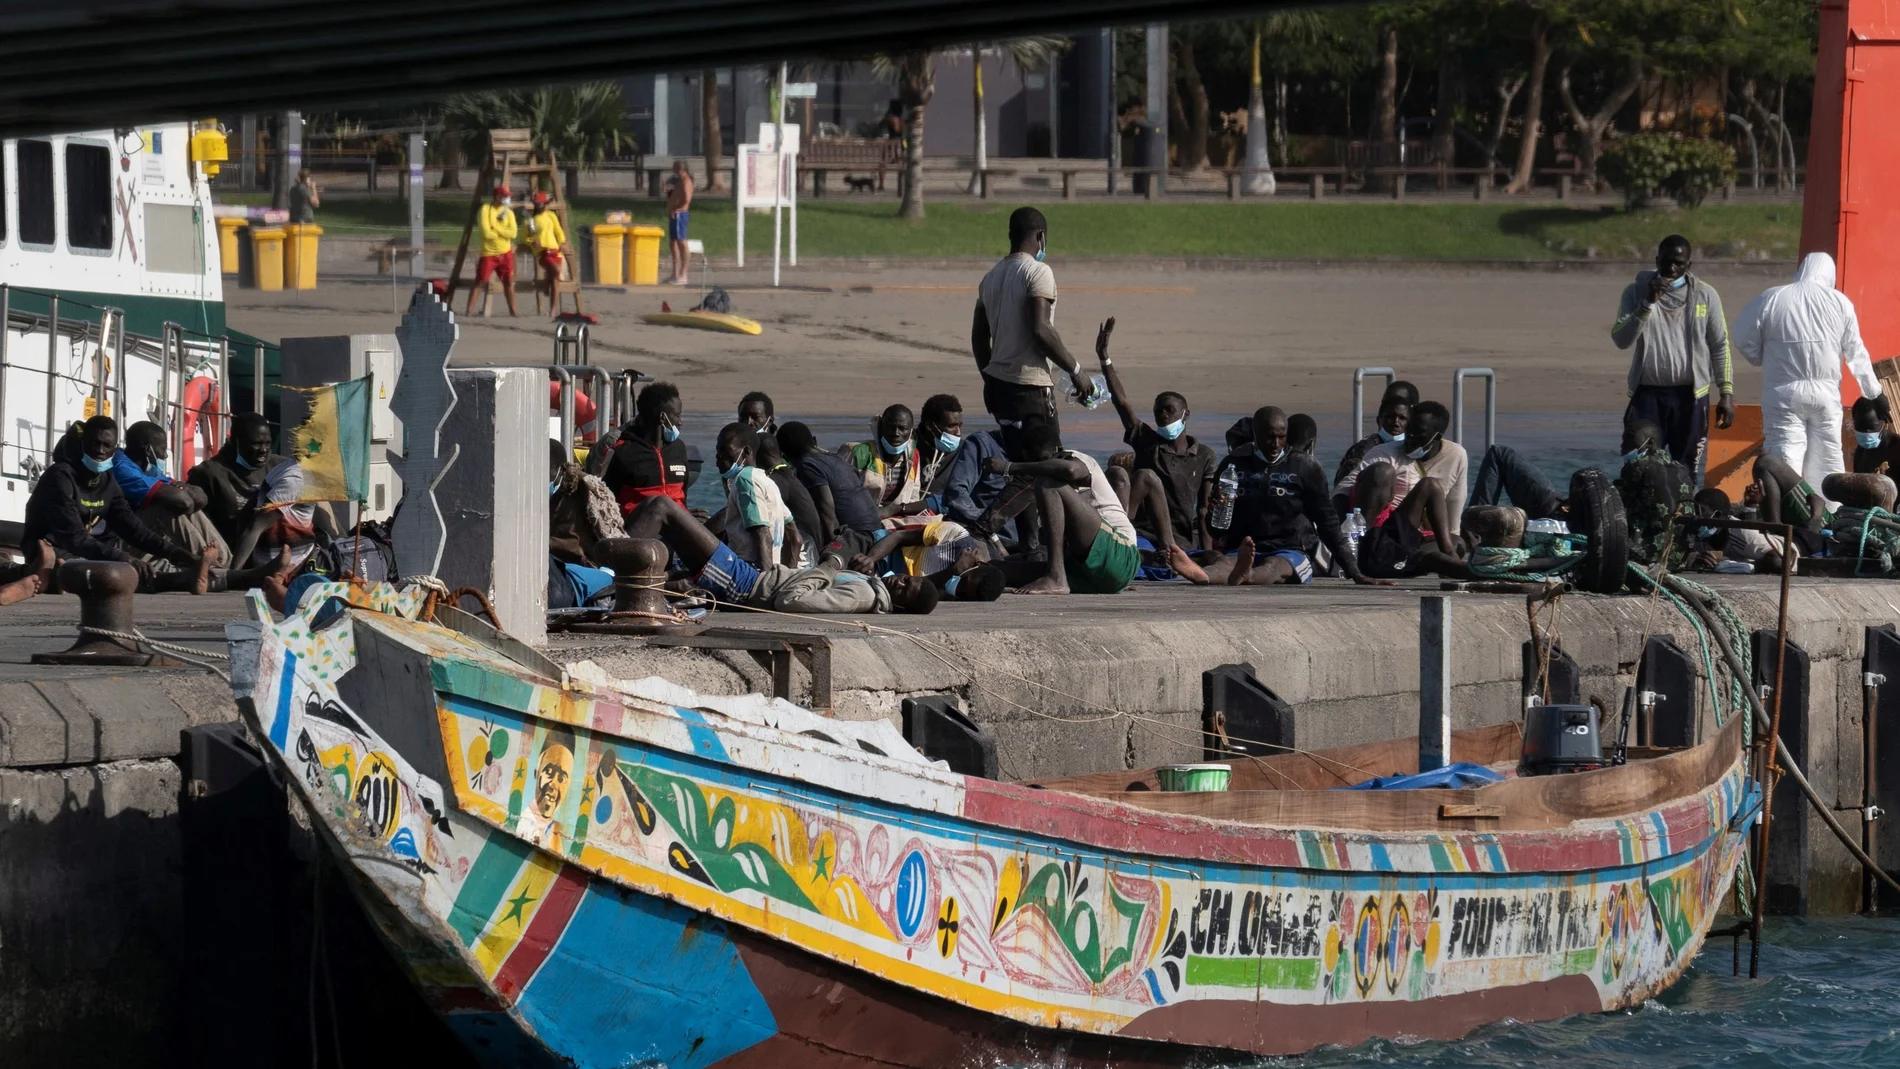 El muelle de Arguineguín se ha convertido en un improvisado centro de acogida de inmigrantes